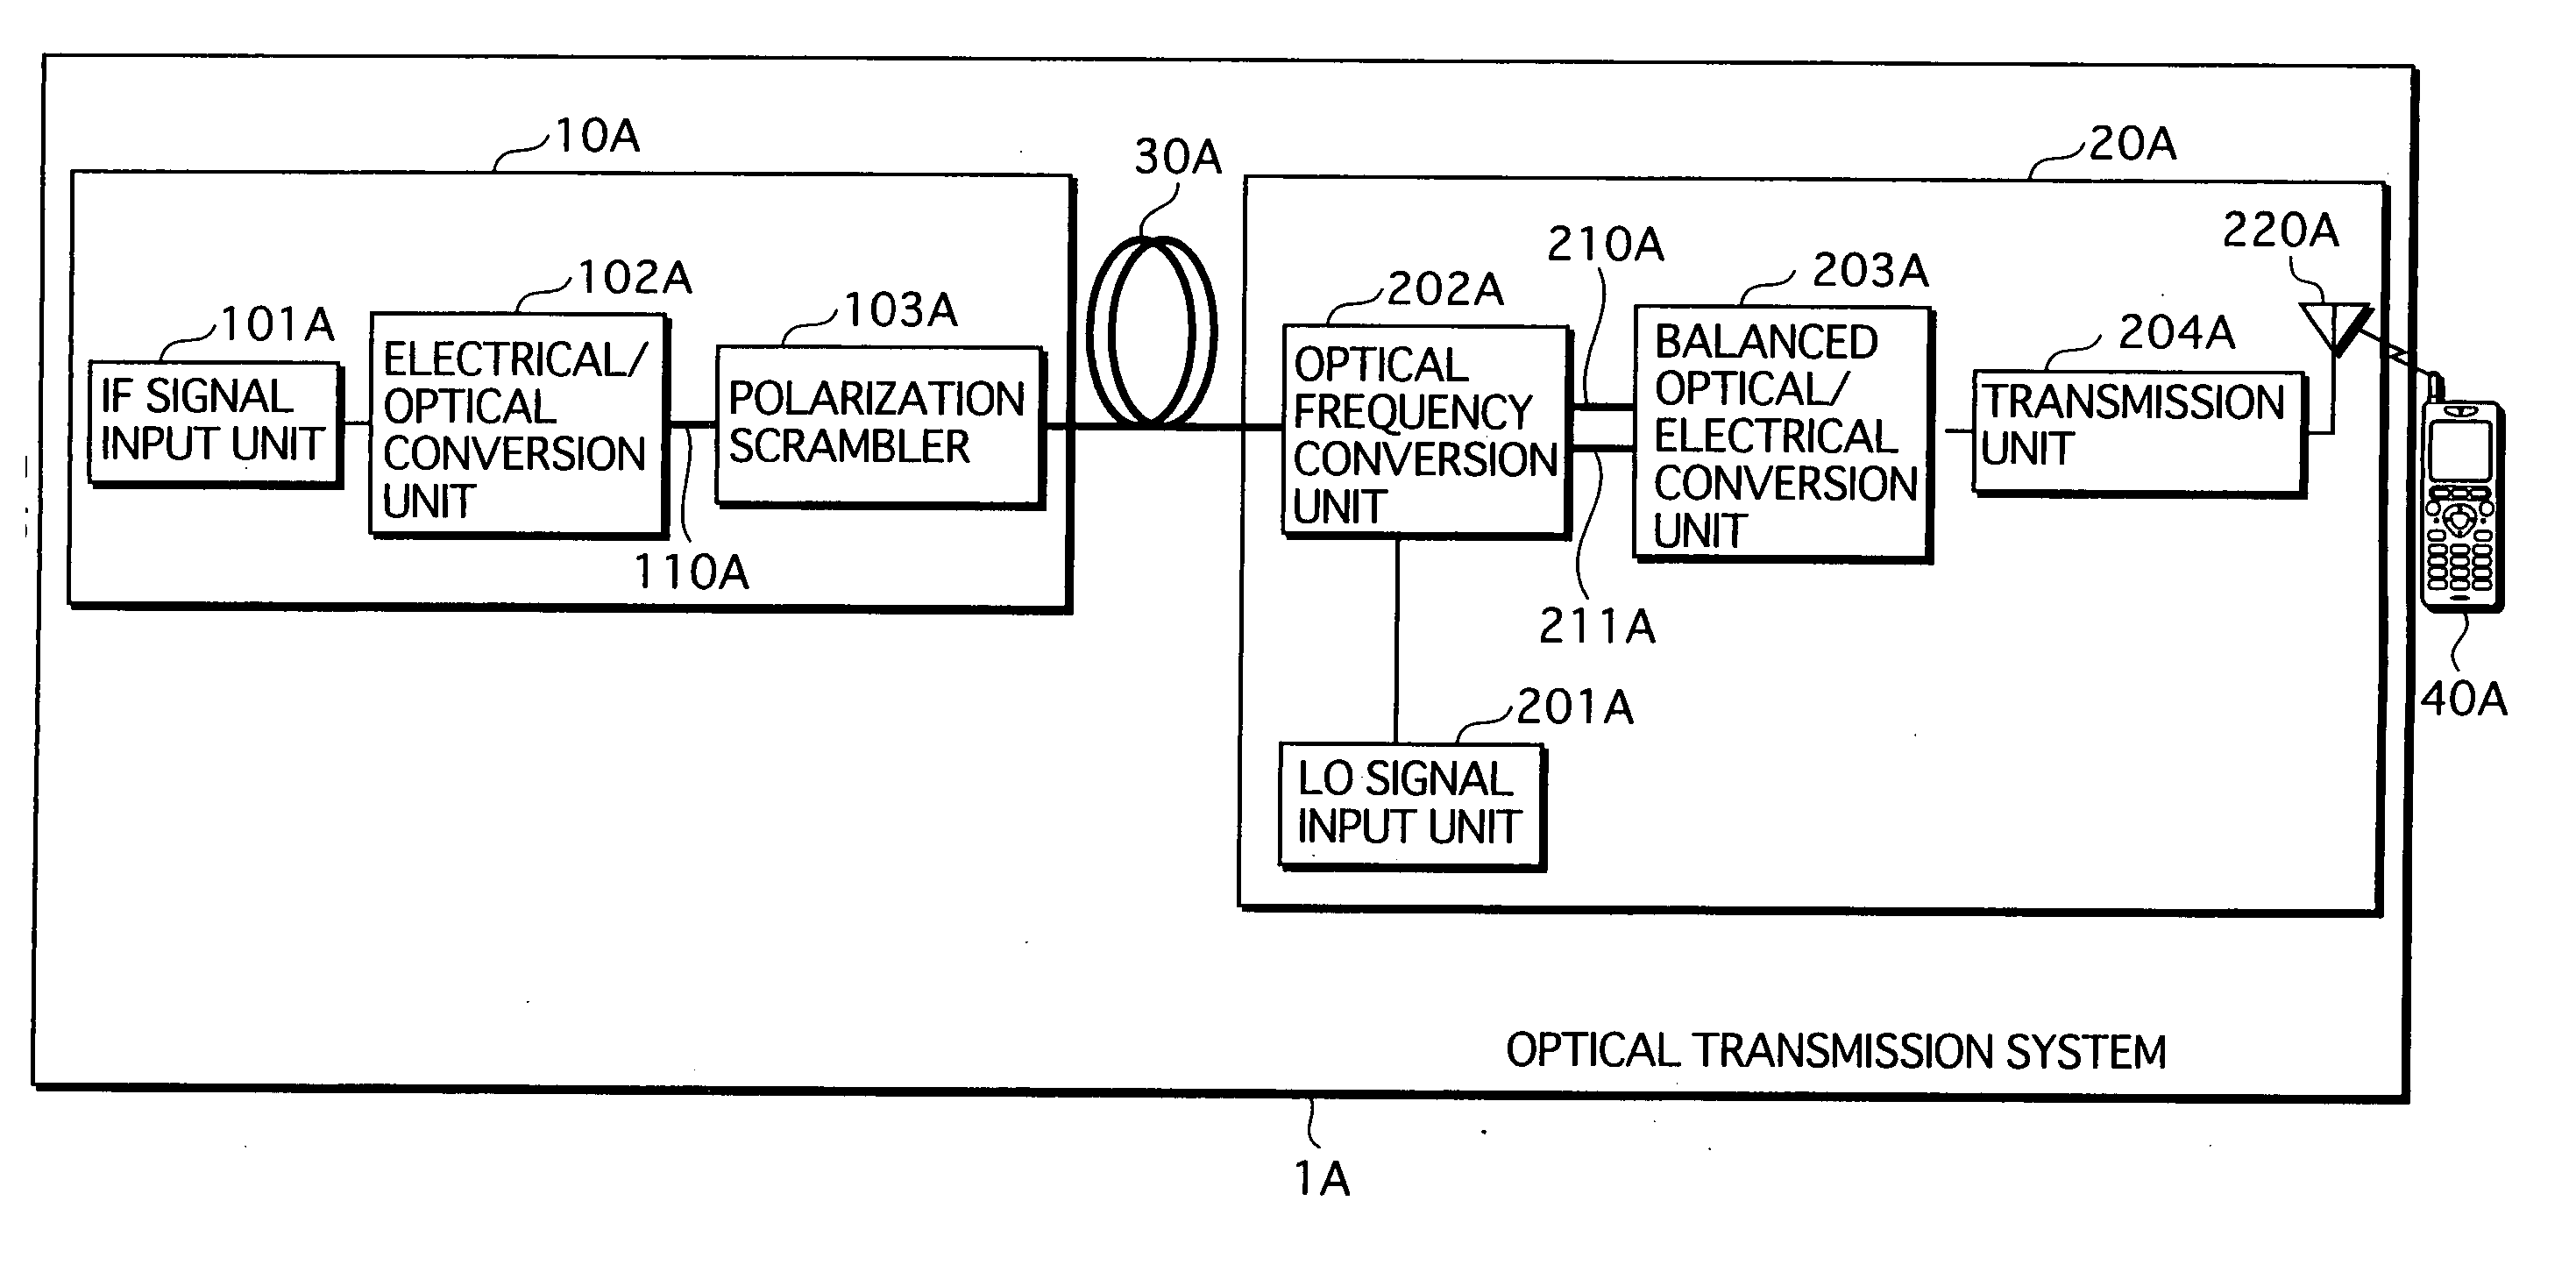 Optical transmission system